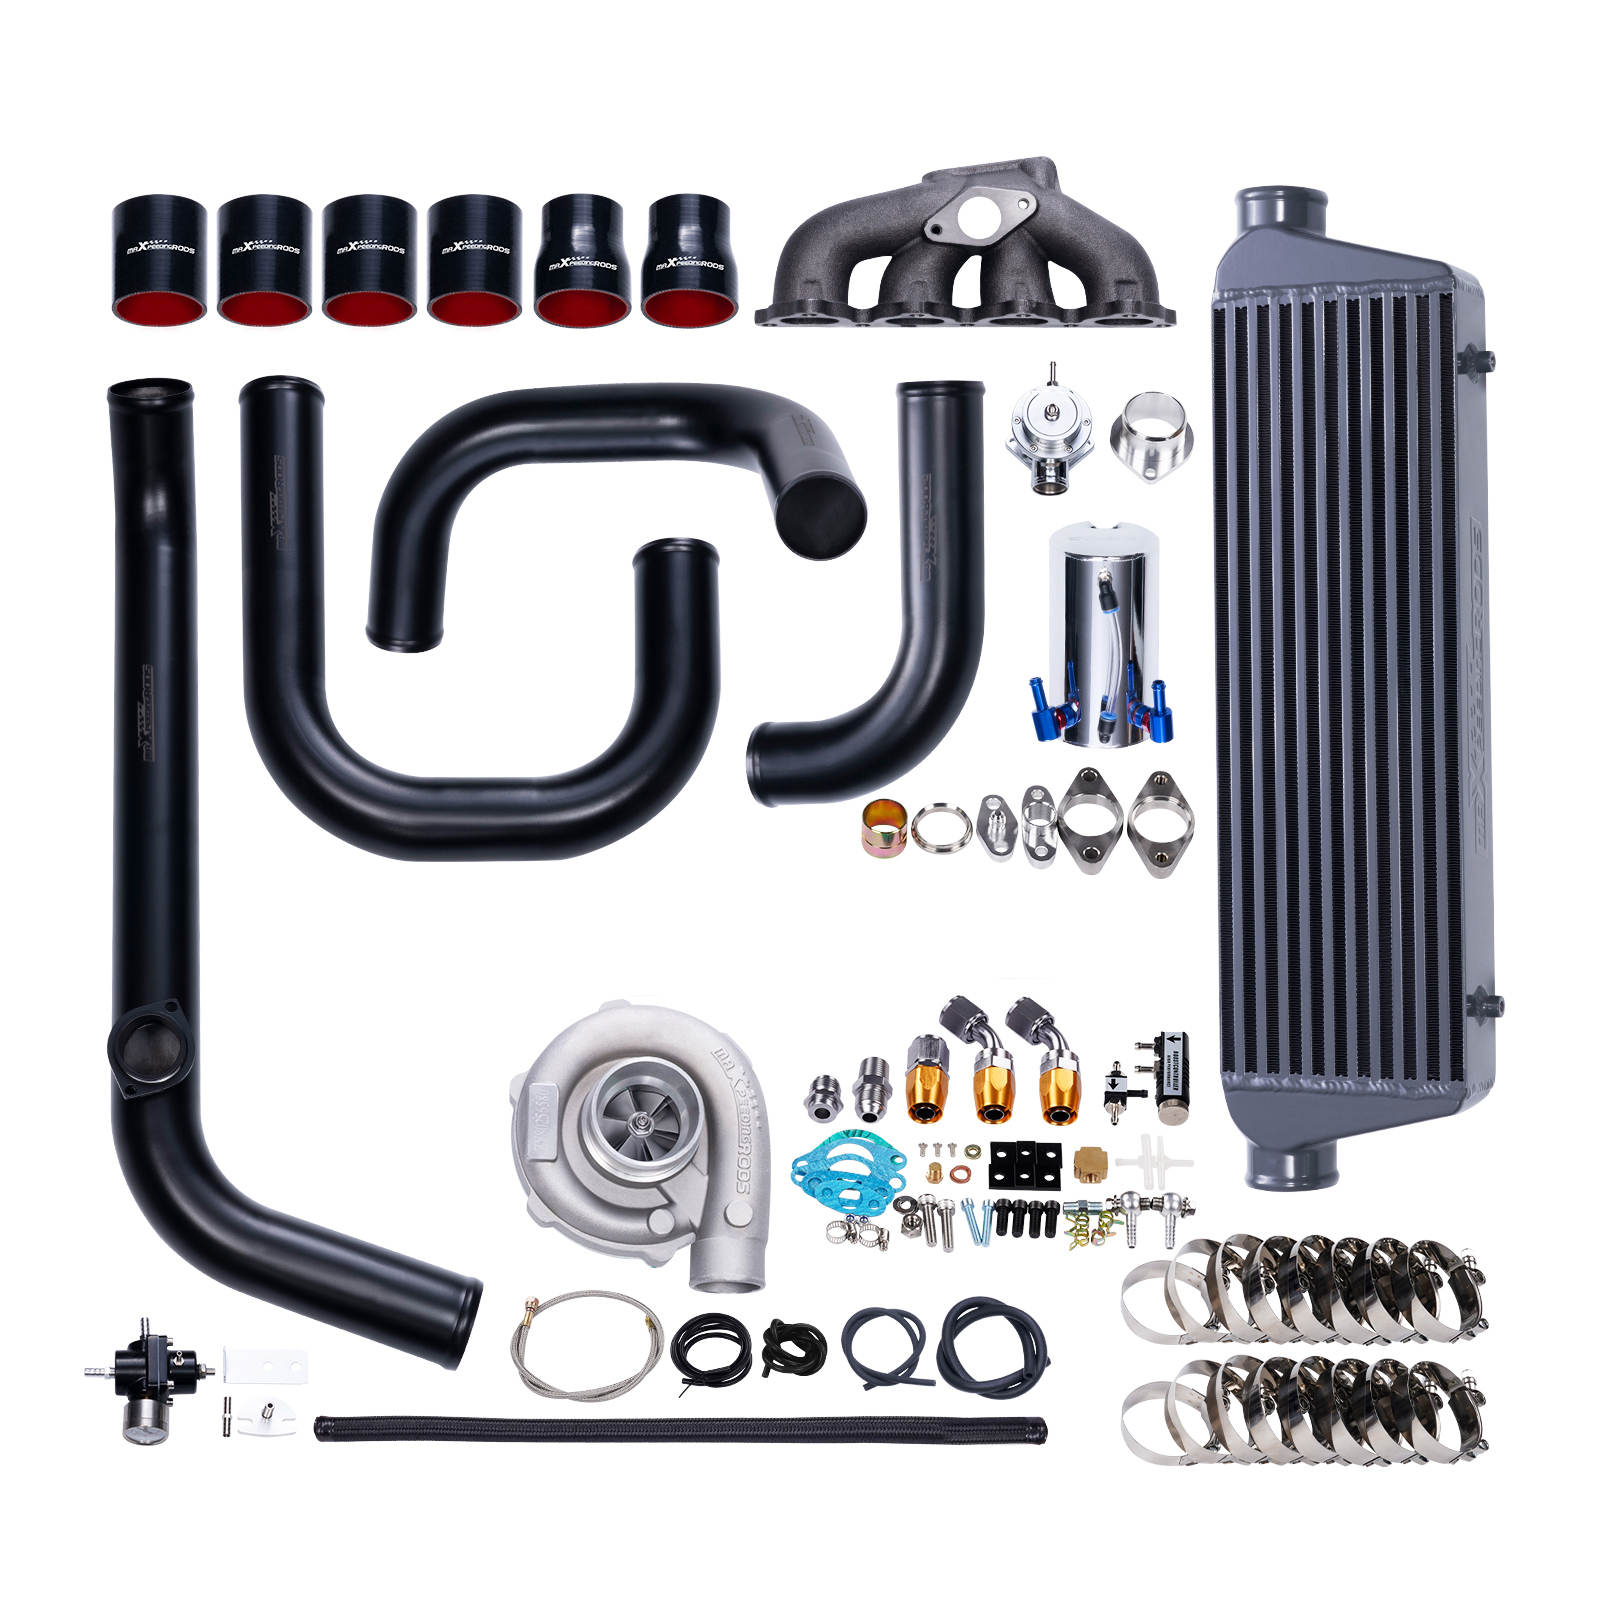 Universal Turbo Kits Perfect For 1.5L-3.0L engine Turbocharger Kit